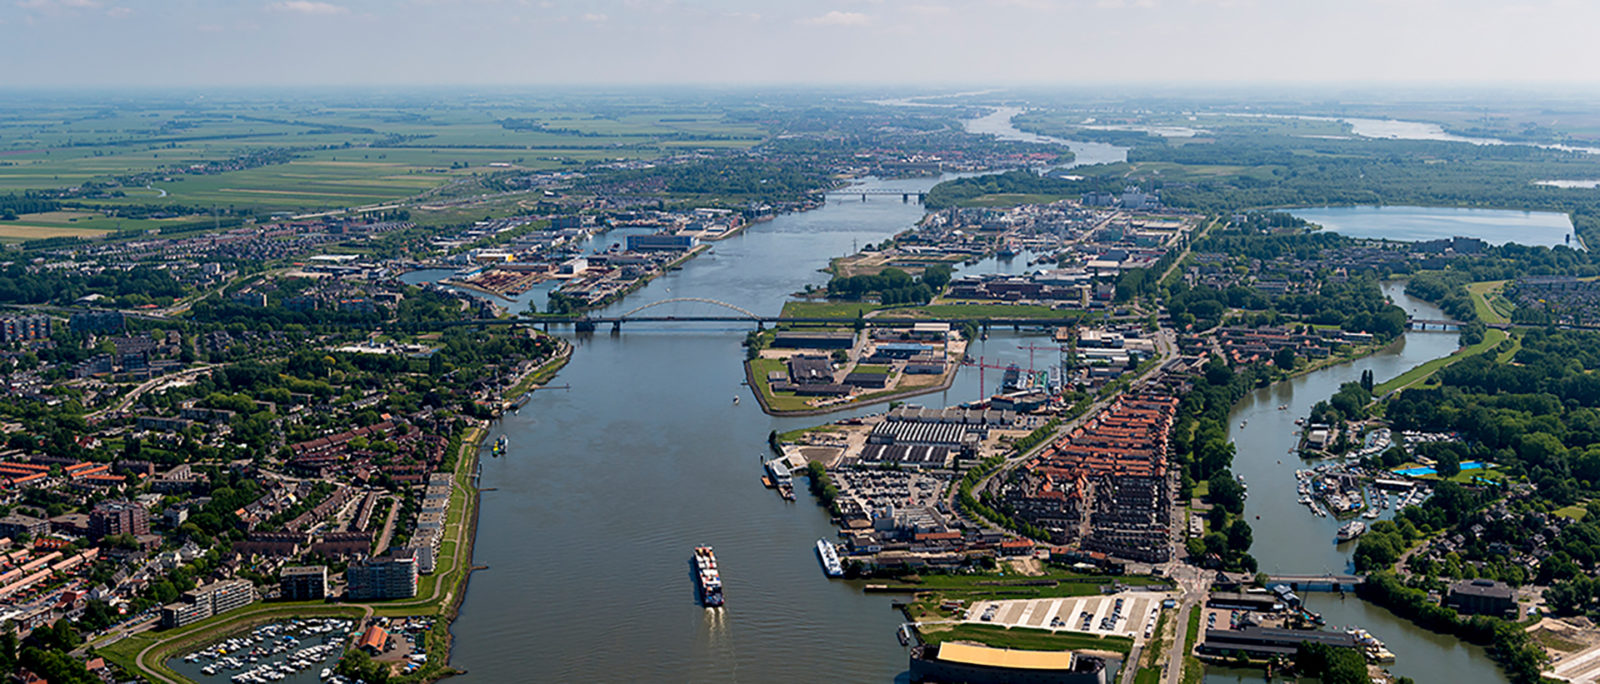 Een landschapsfoto van een rivier in Nederland. Op de foto zijn schepen op het water te zien, met langs de randen huizen.